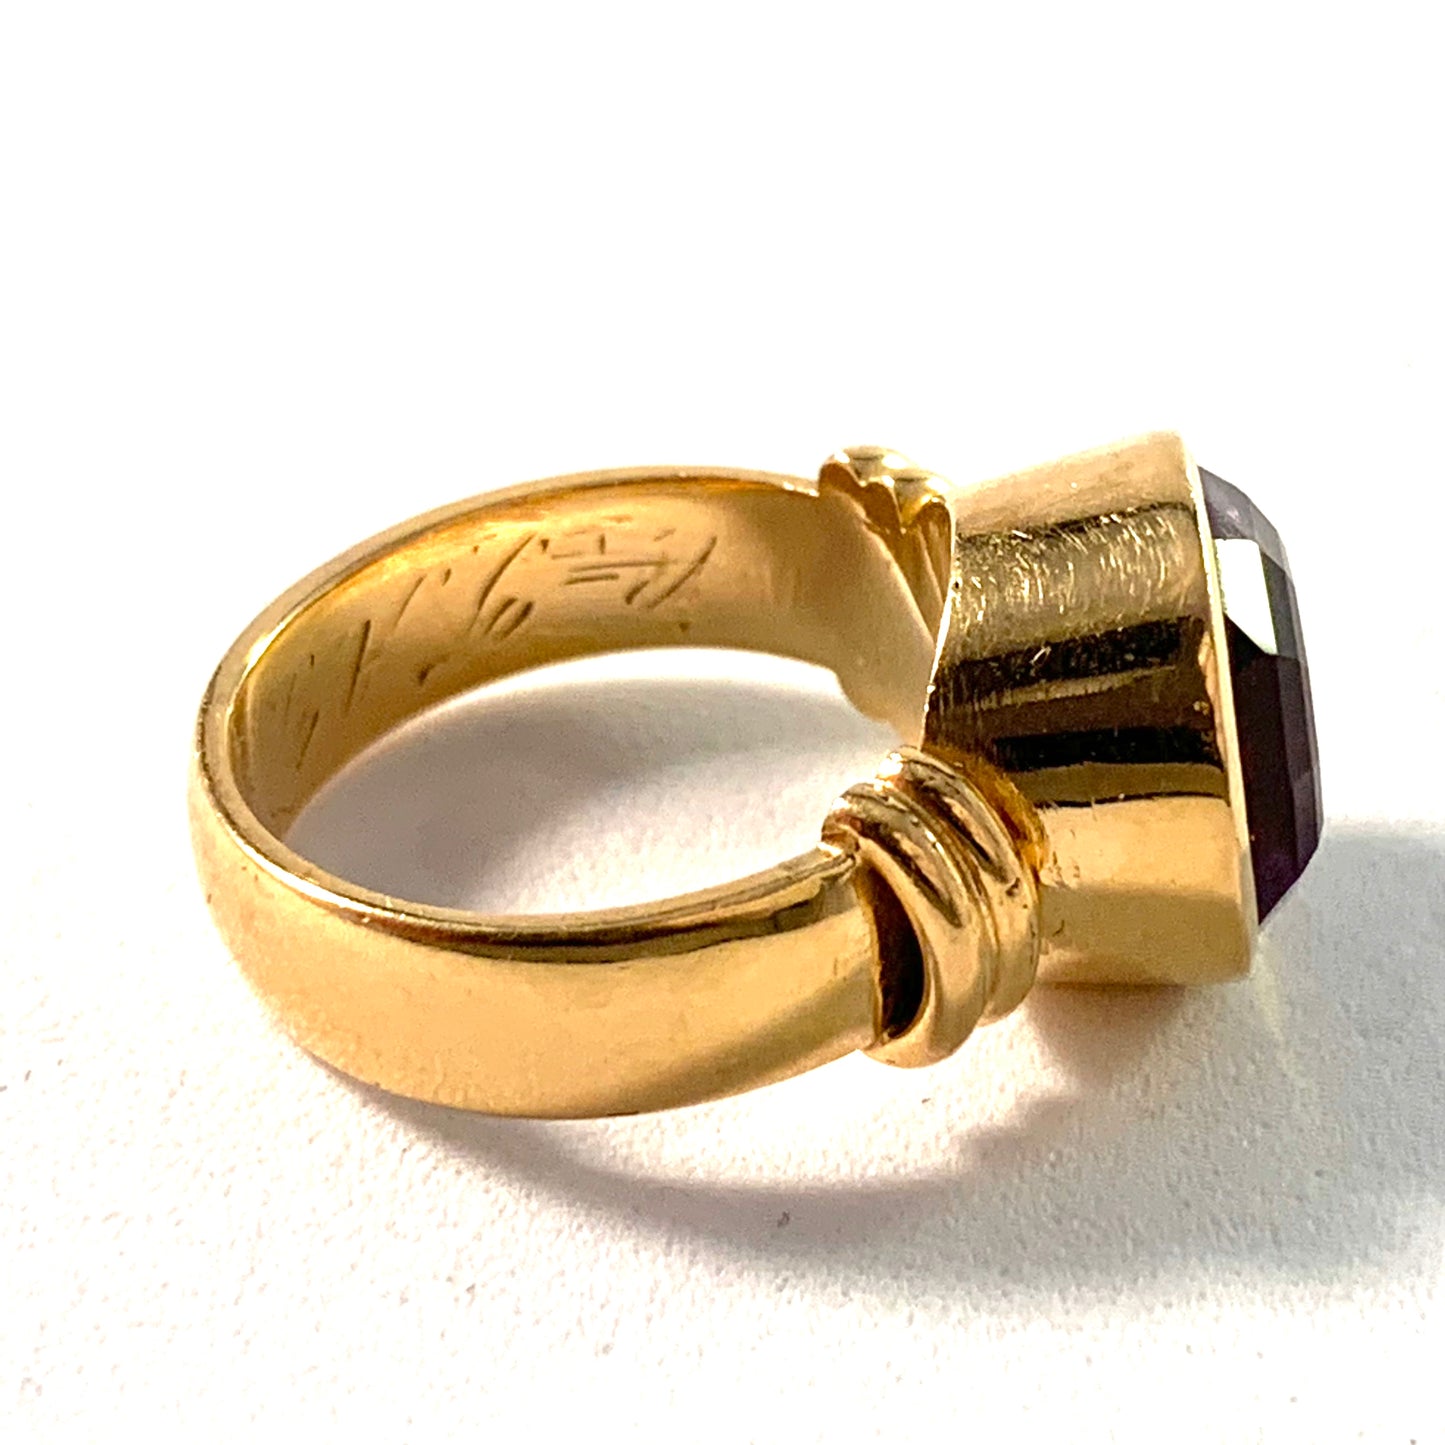 Kjernås, Sweden 1930s, 20k Gold Amethyst Ring.